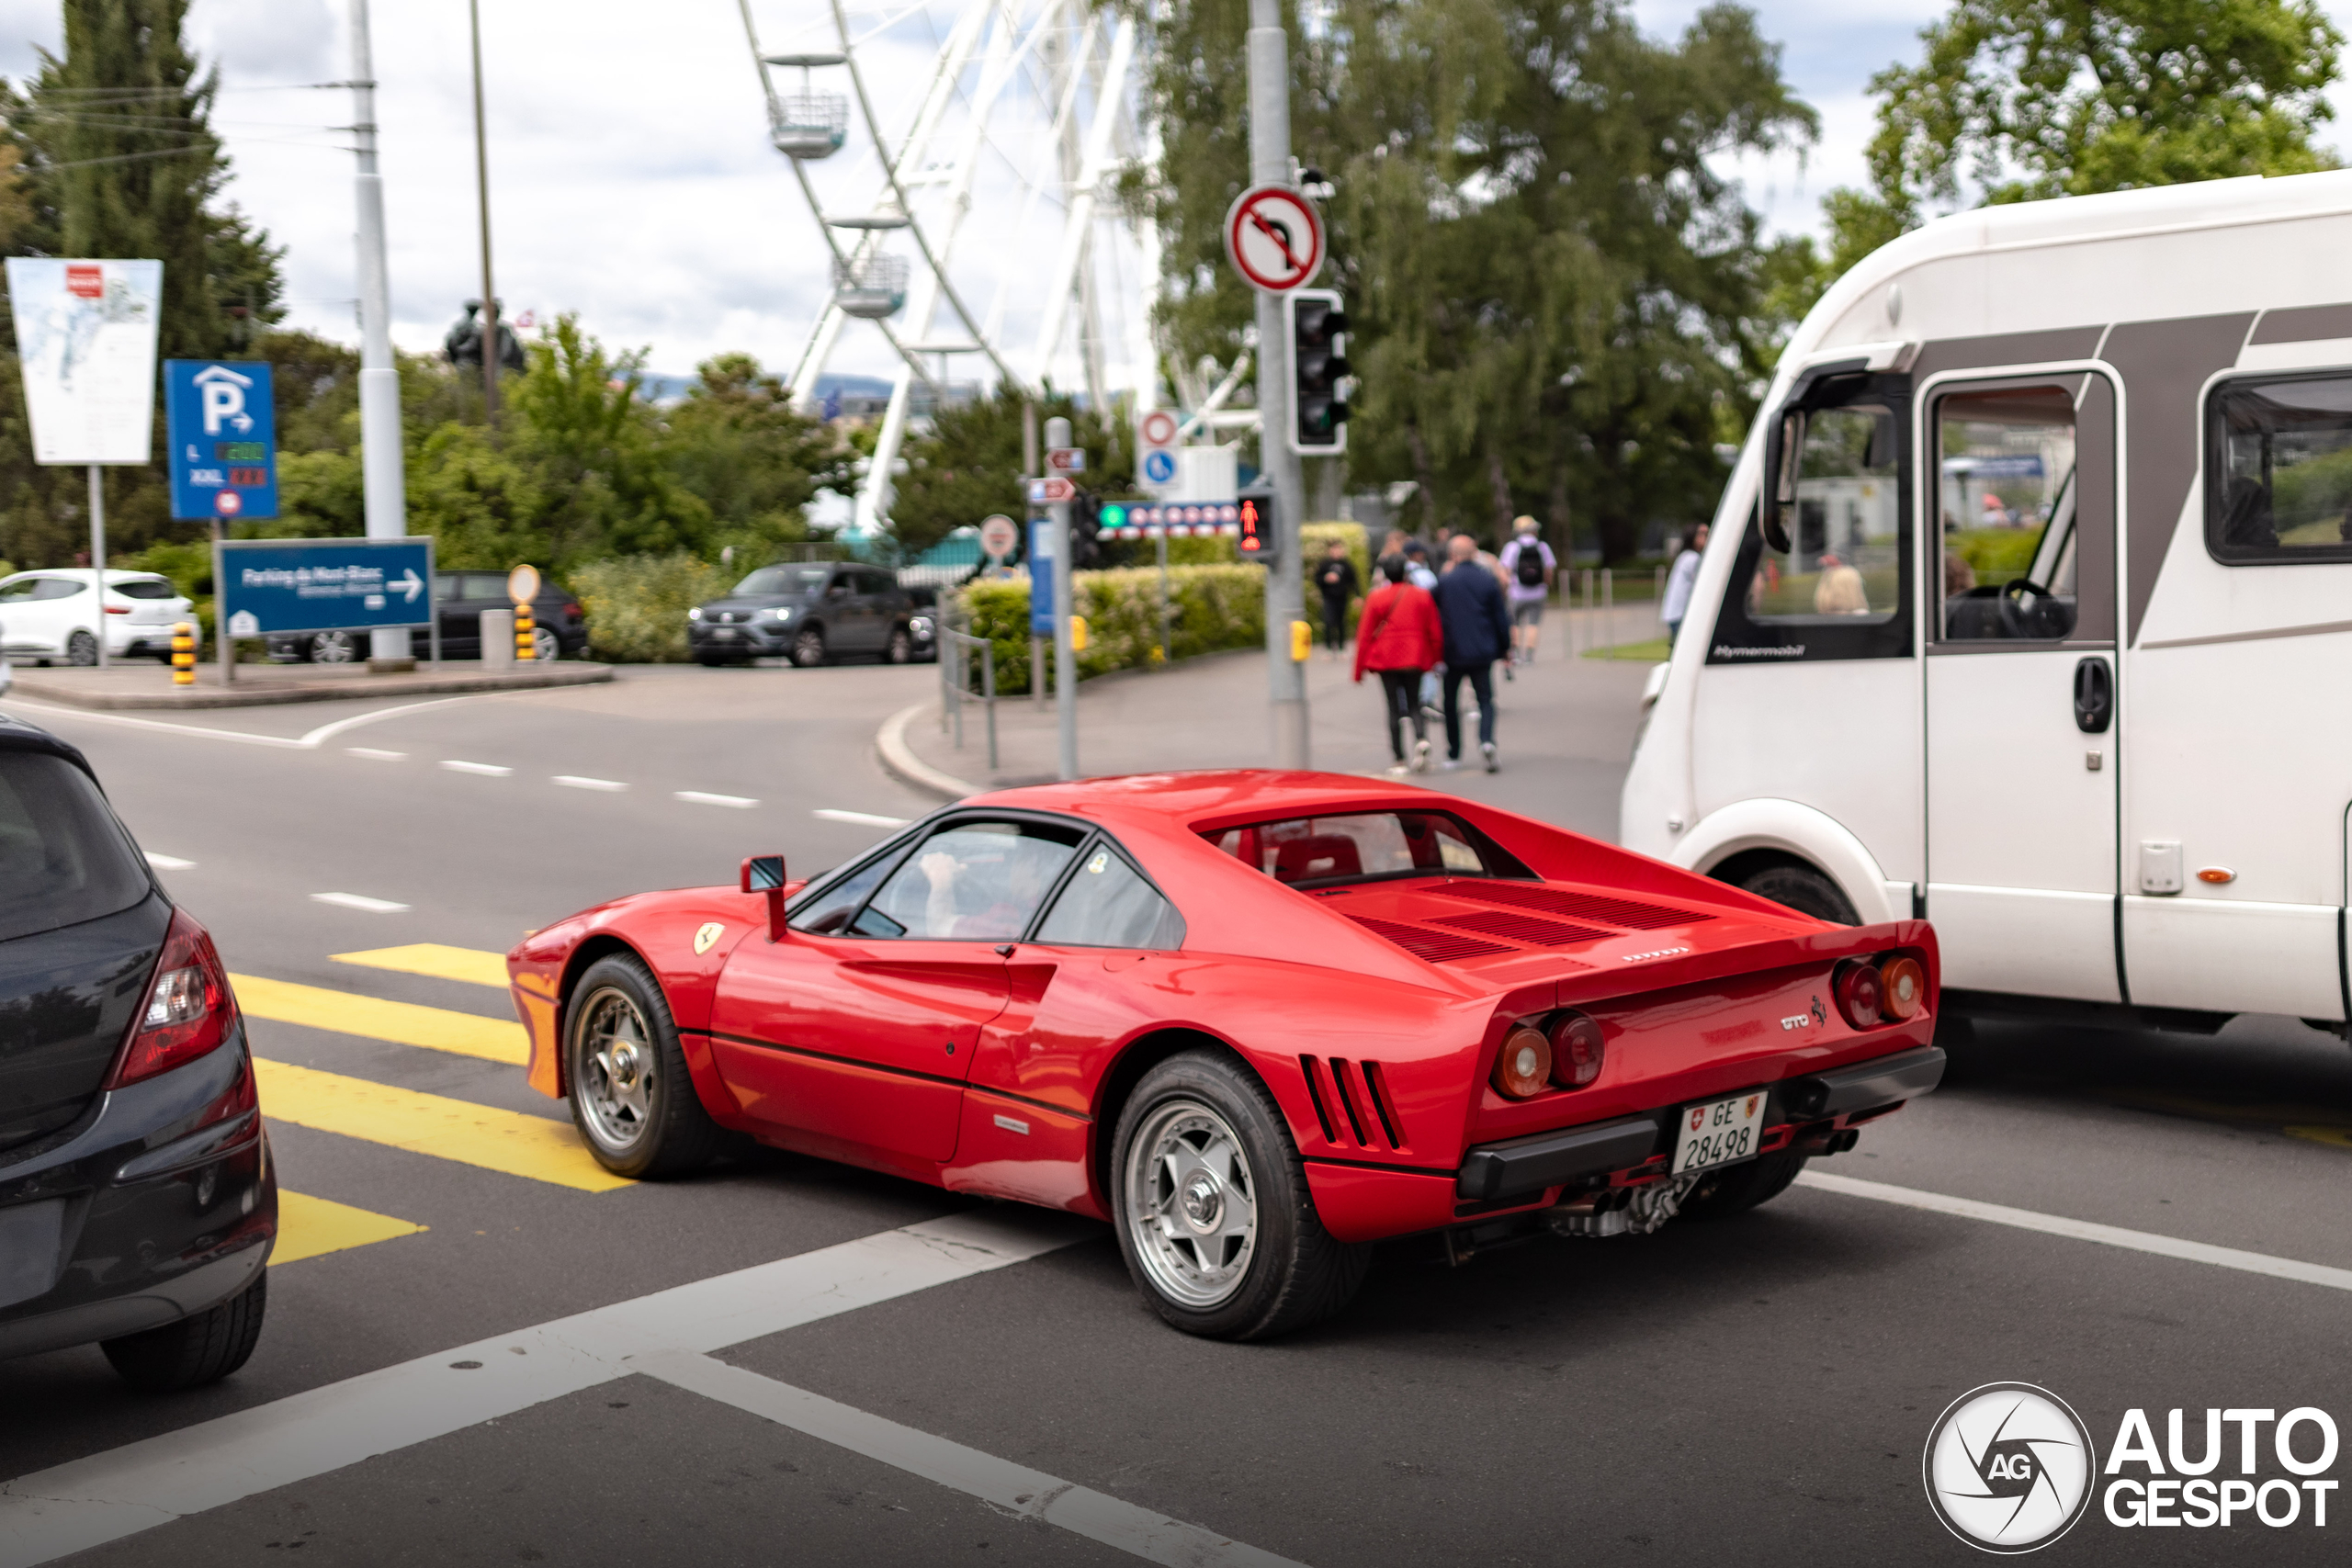 The Rare 288 GTO in Geneva